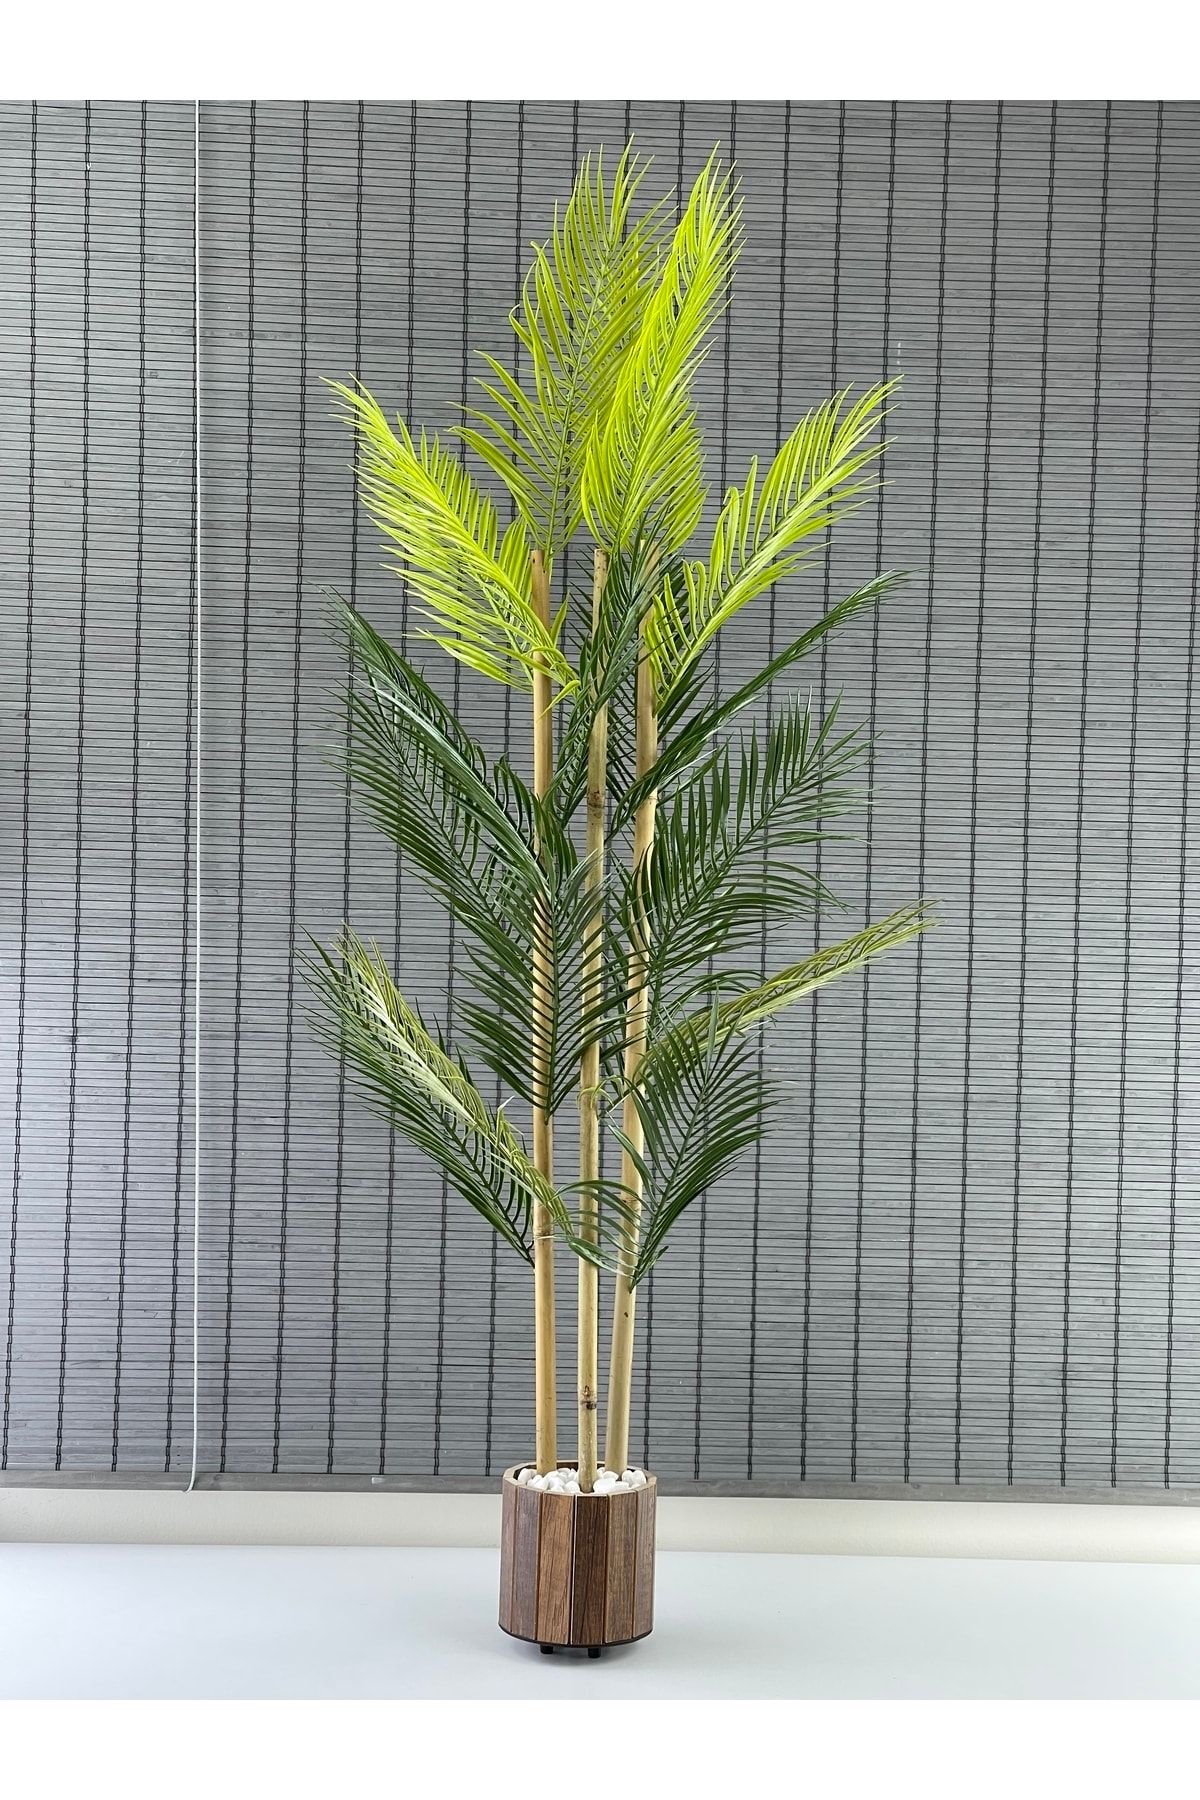 Bahçem Yapay Çiçek Areka Ağacı Palmiye Ağacı Bambu Gövdeli Ahşap Saksılı 18 Yaprak 125 Cm